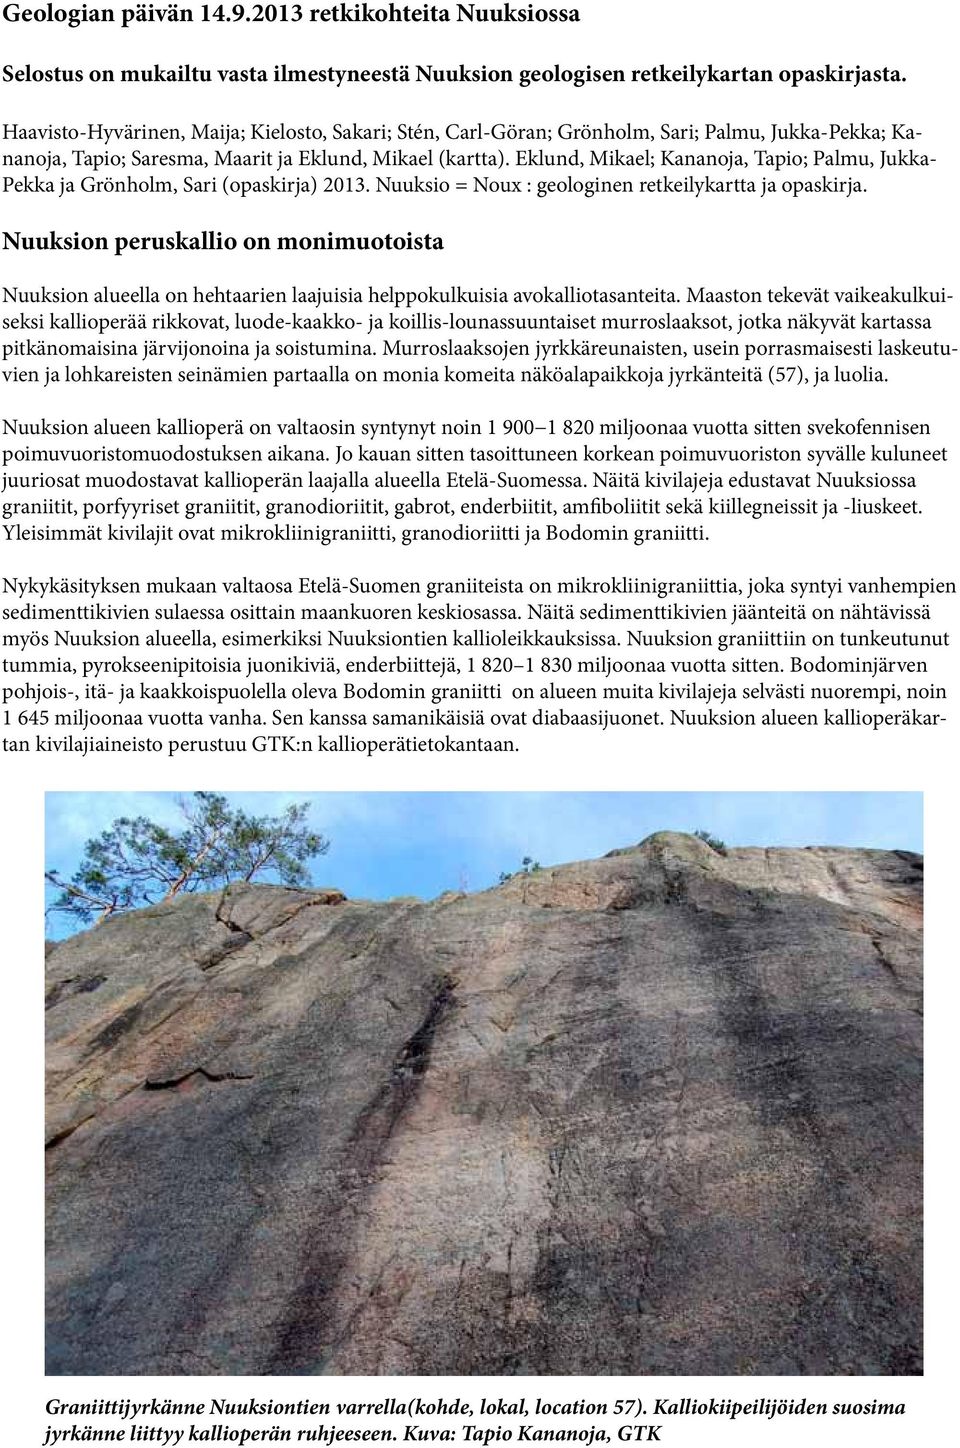 Eklund, Mikael; Kananoja, apio; Palmu, Jukka- Pekka ja Grönholm, Sari (opaskirja) 2013. Nuuksio = Noux : geologinen retkeilykartta ja opaskirja.